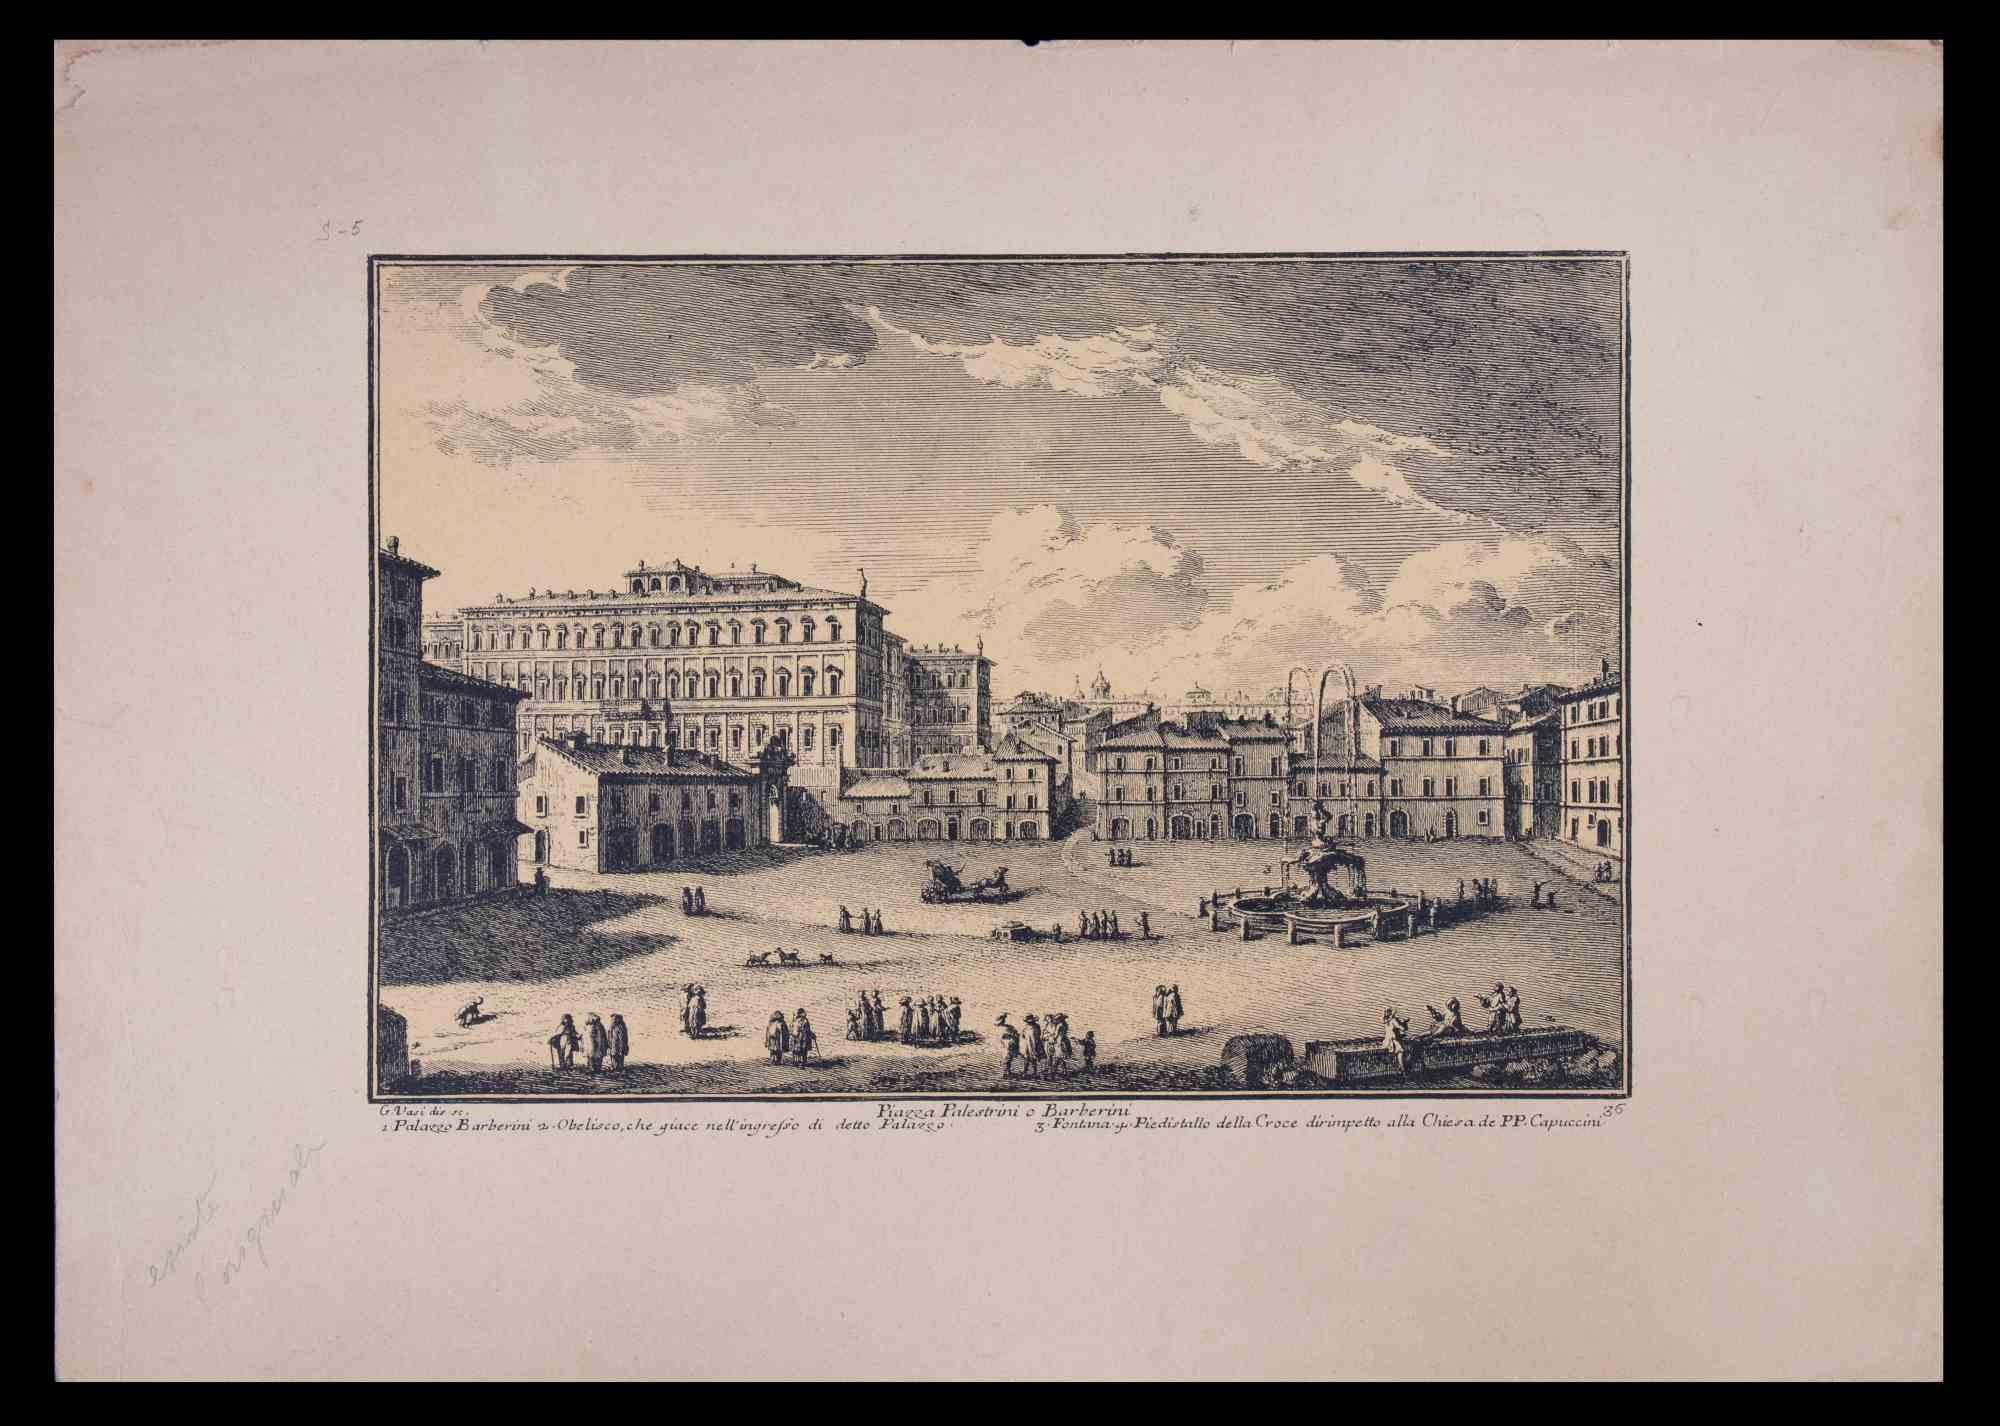 Palazzo Barberini ist eine Original-Schwarz-Weiß-Radierung aus dem späten 18. Jahrhundert von Giuseppe Vasi.

Die schöne Radierung zeigt einen Blick auf Rom.

Signiert und betitelt am unteren Rand der Platte. Auf der unteren Seite betitelt.

Guter